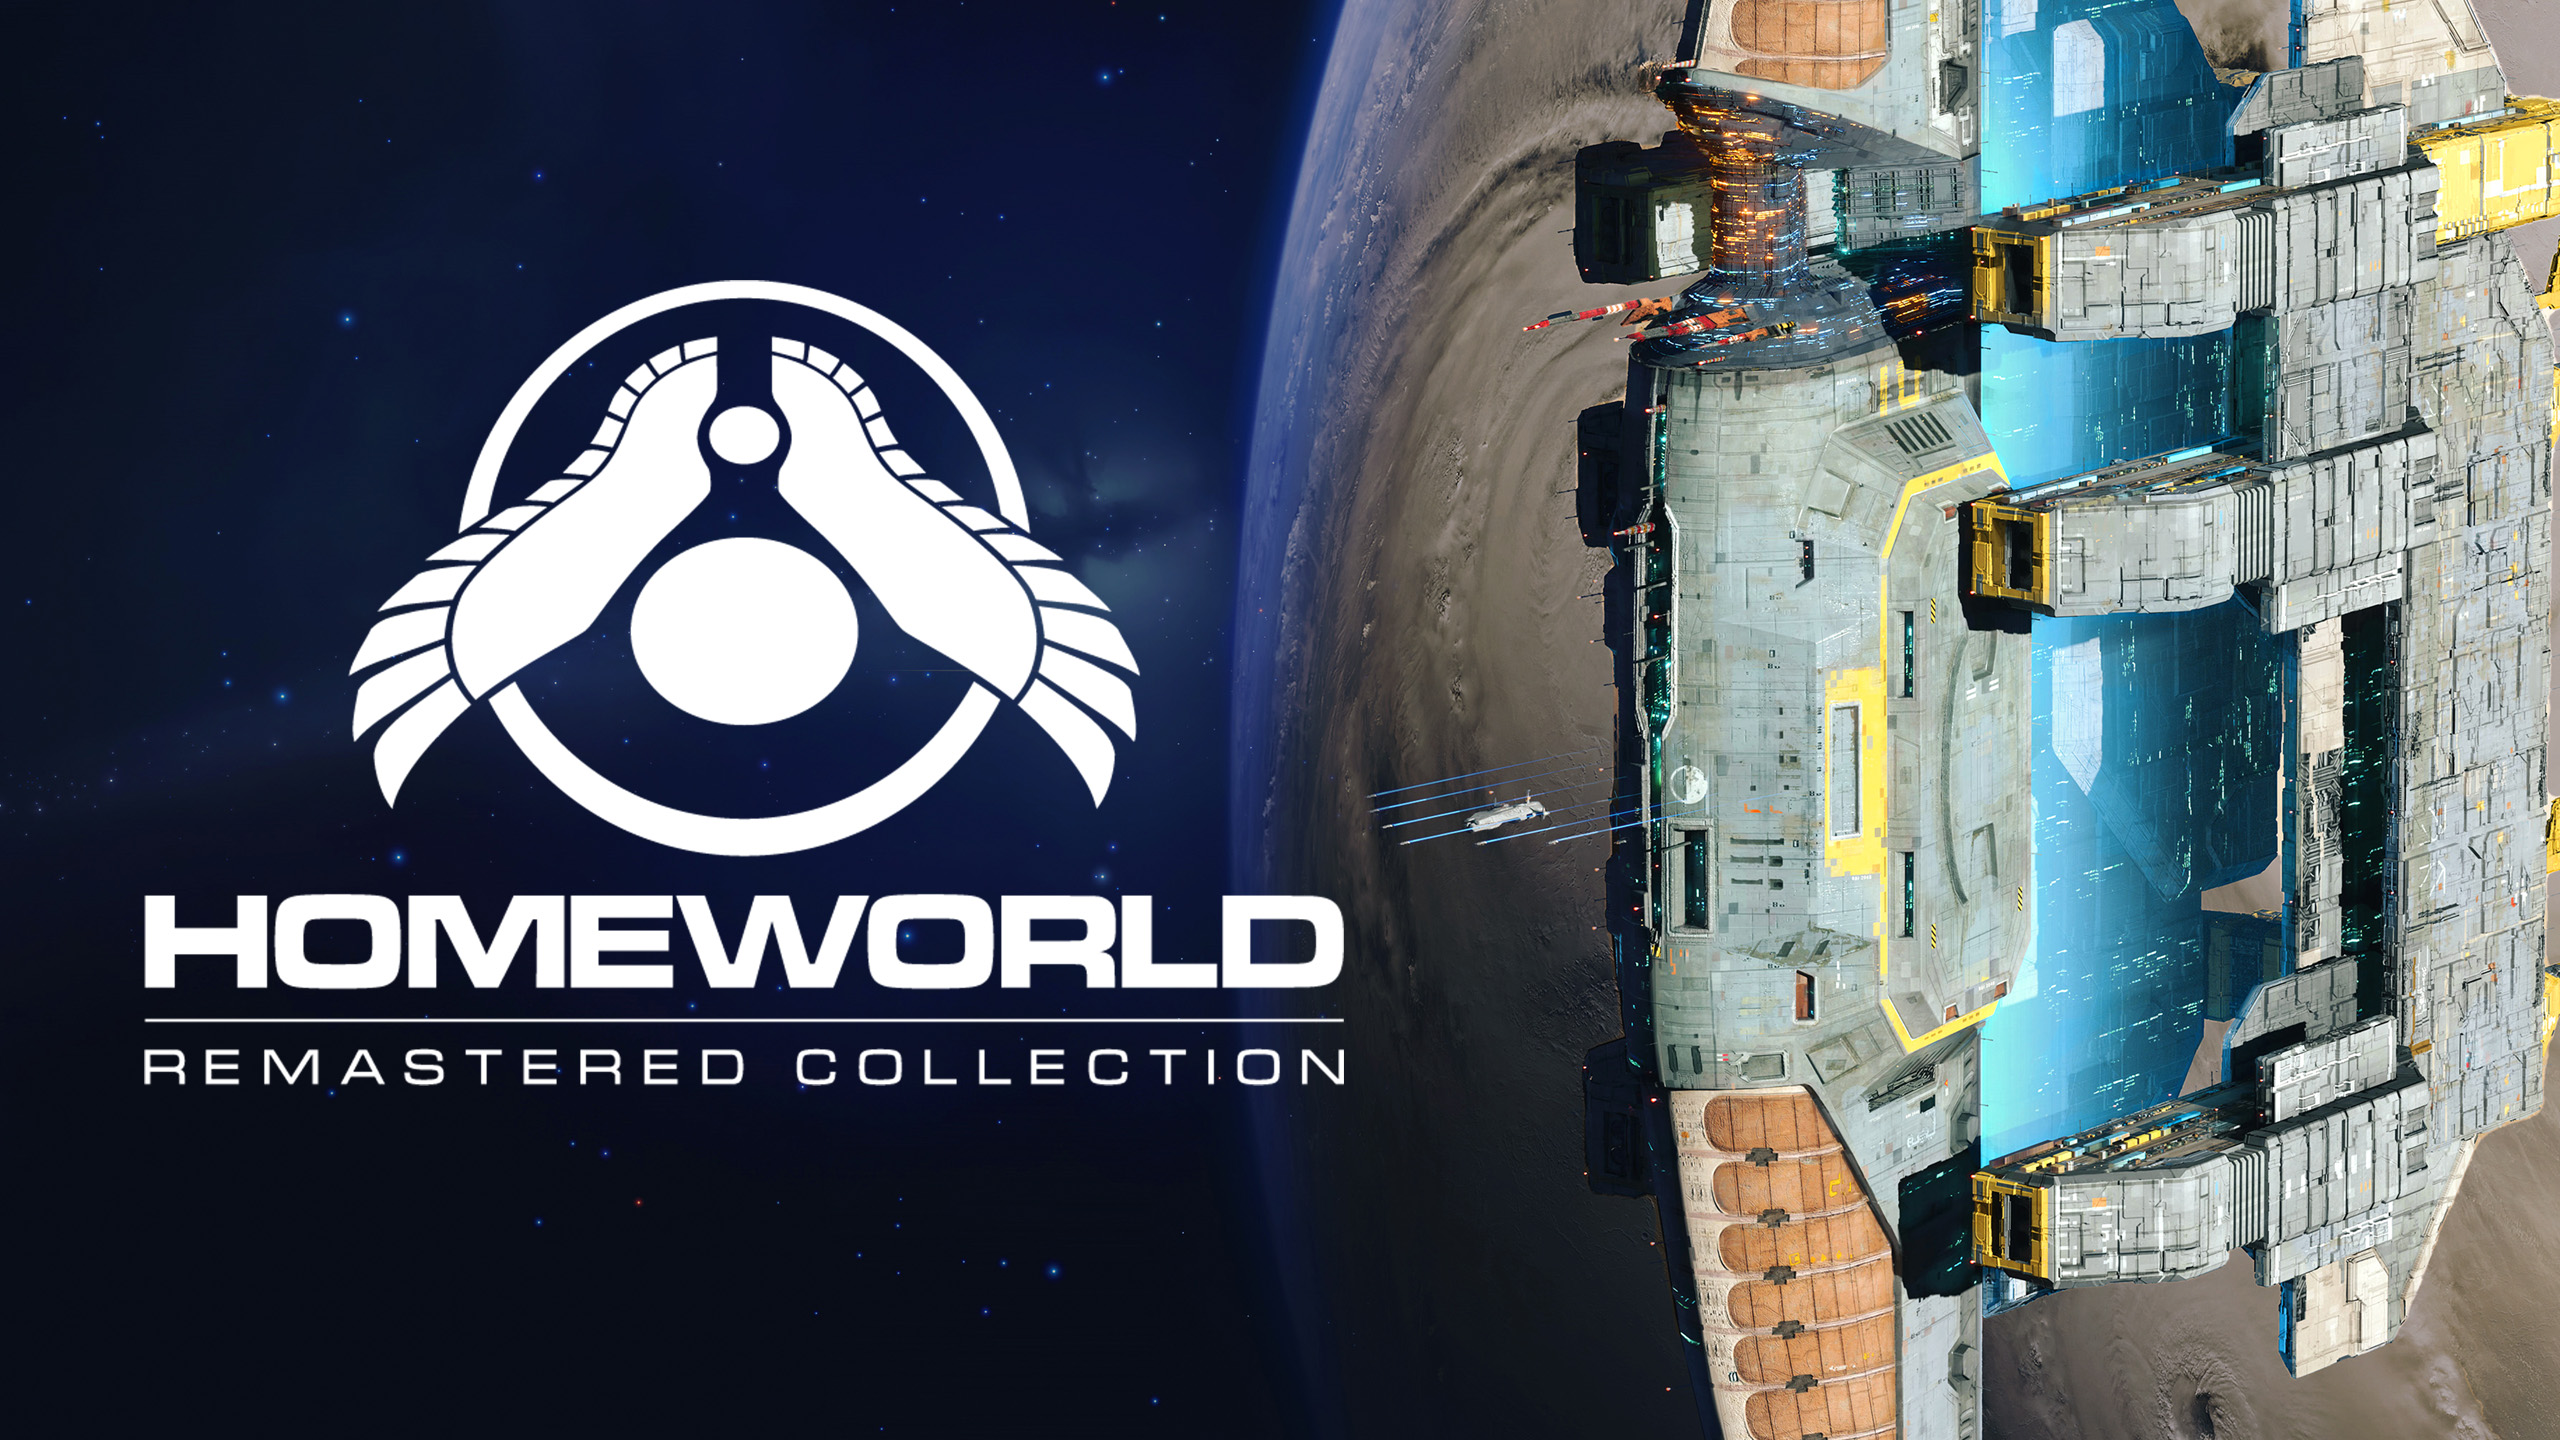 Odkryj majestat kosmosu: Homeworld - Twoja epicka przygoda zaczyna się tutaj!